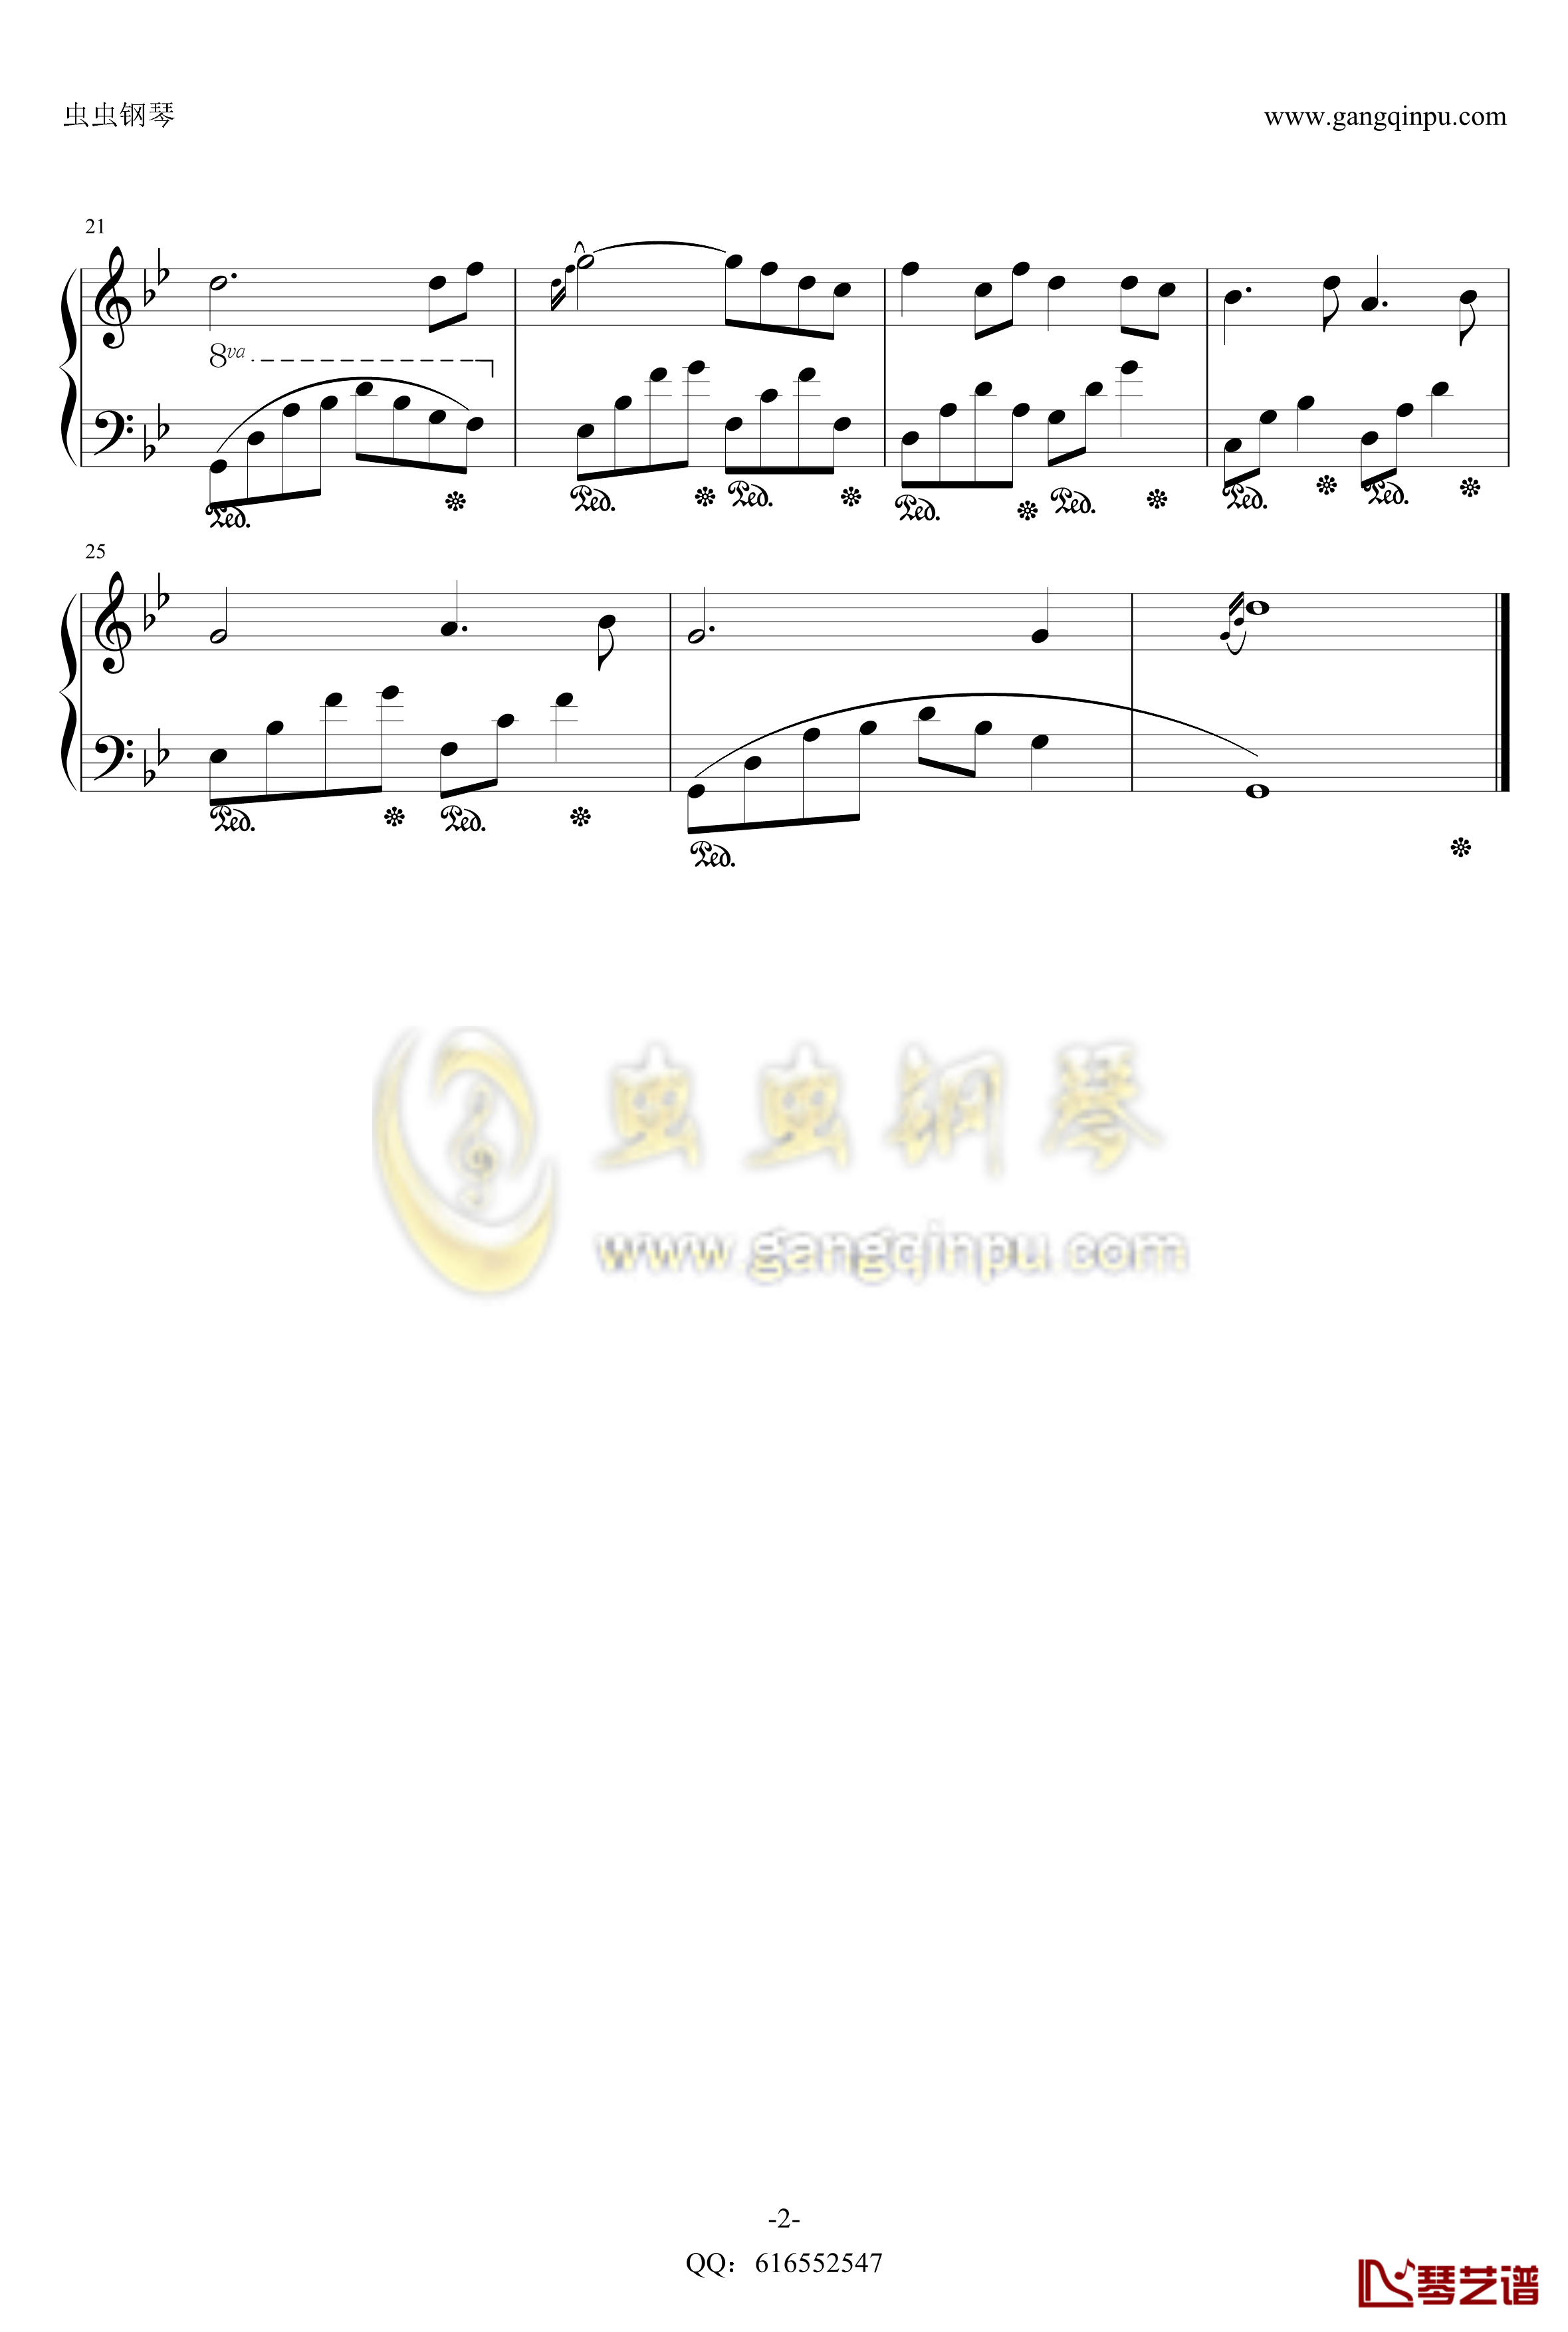 夜的钢琴曲1钢琴谱-金龙鱼优化版160606-石进2